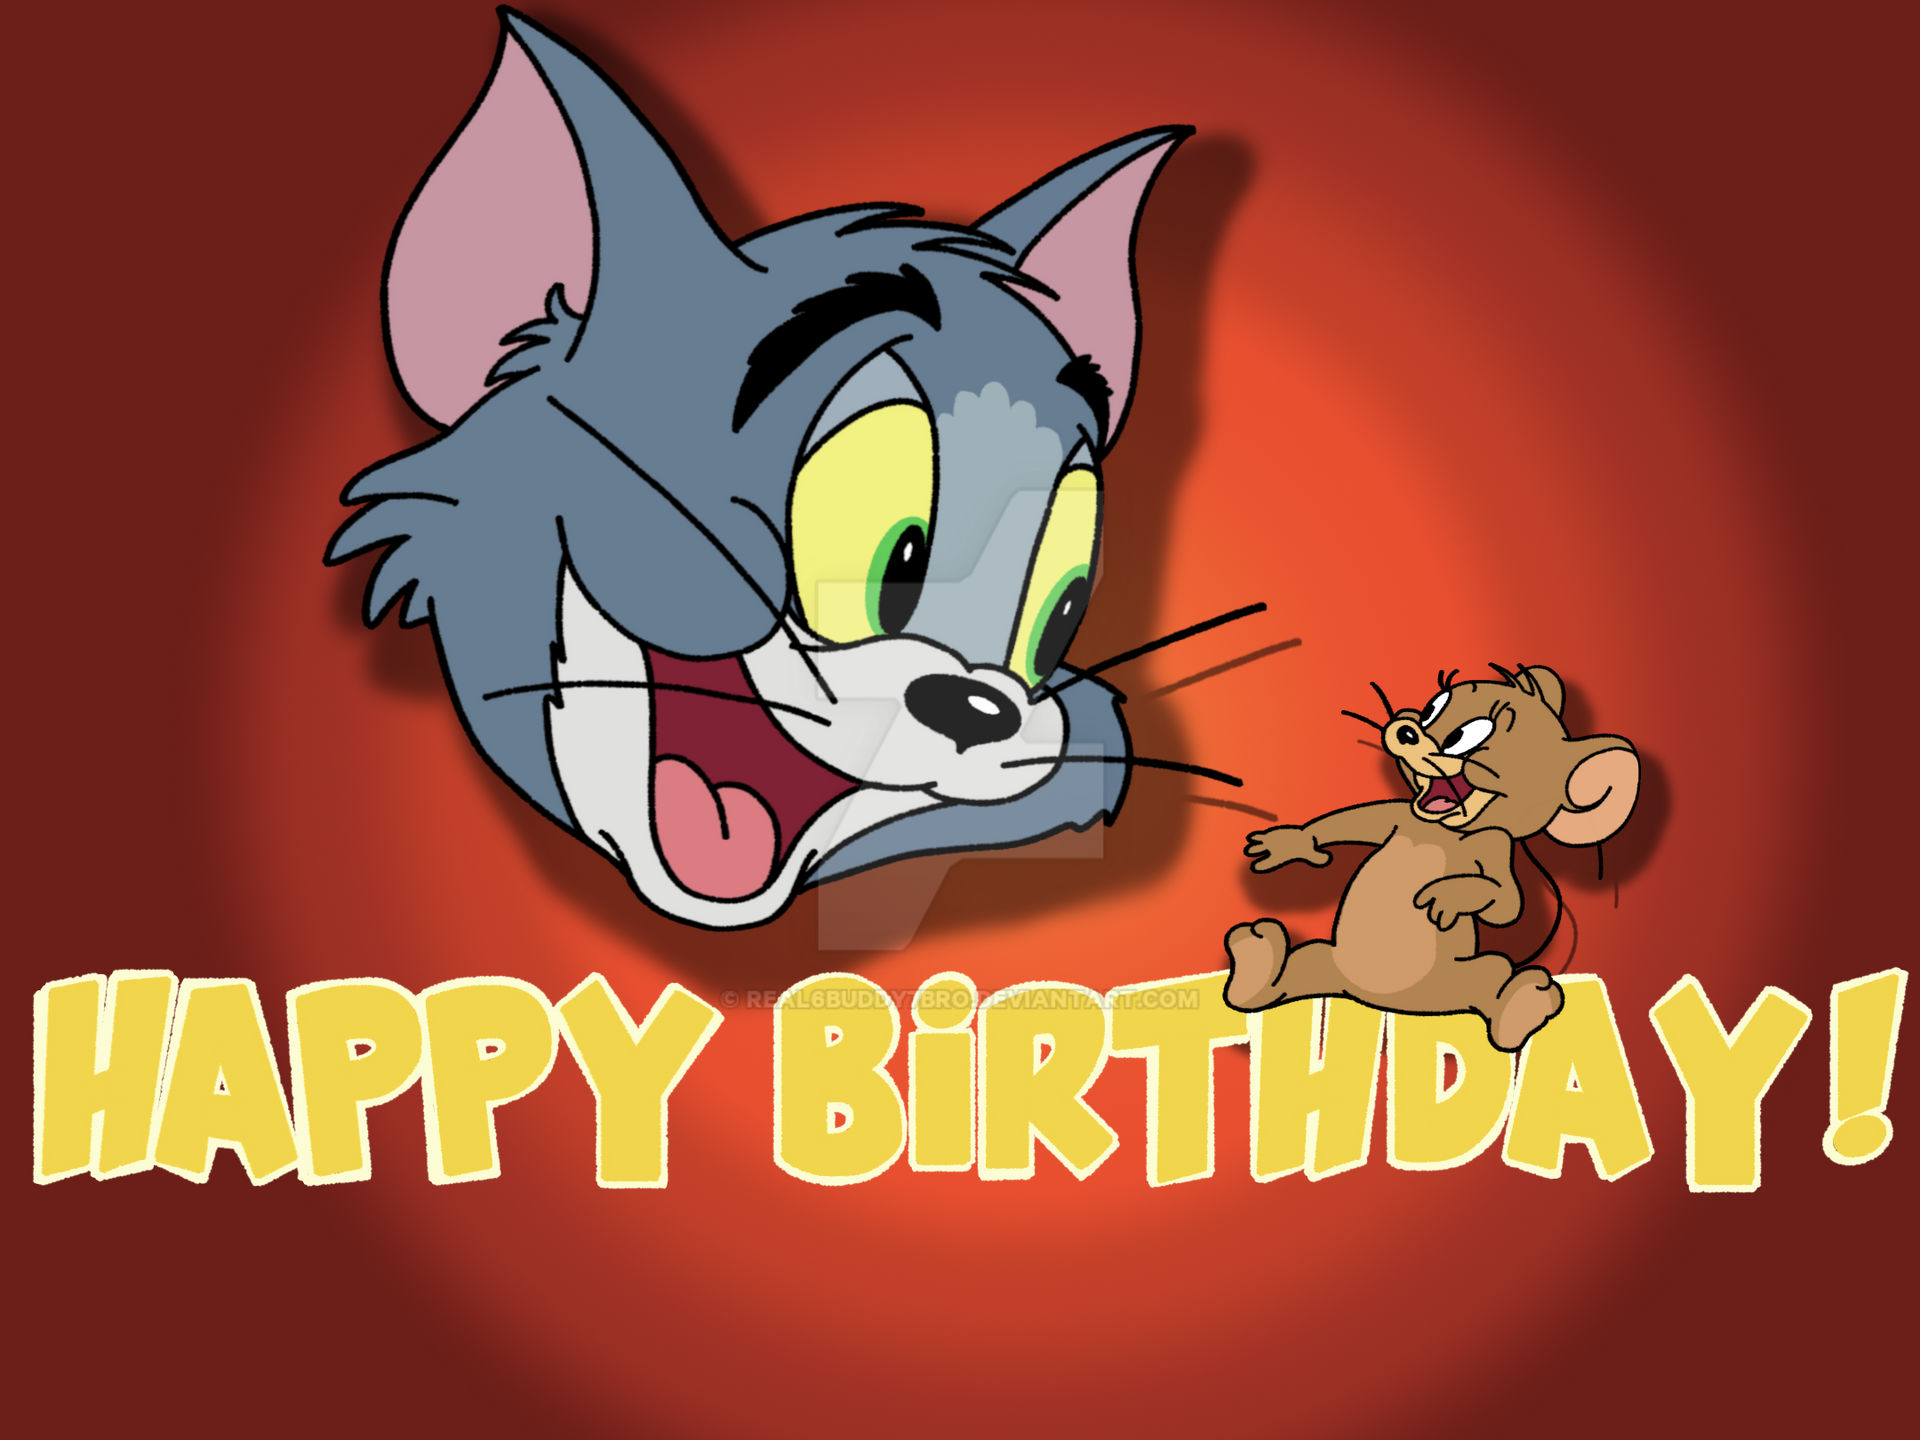 Toms birthday is. Том и Джерри с днем рождения. Хэппи мил том и Джерри. Счастливый том. Картинка 20 февраля день рождения Тома и Джерри.